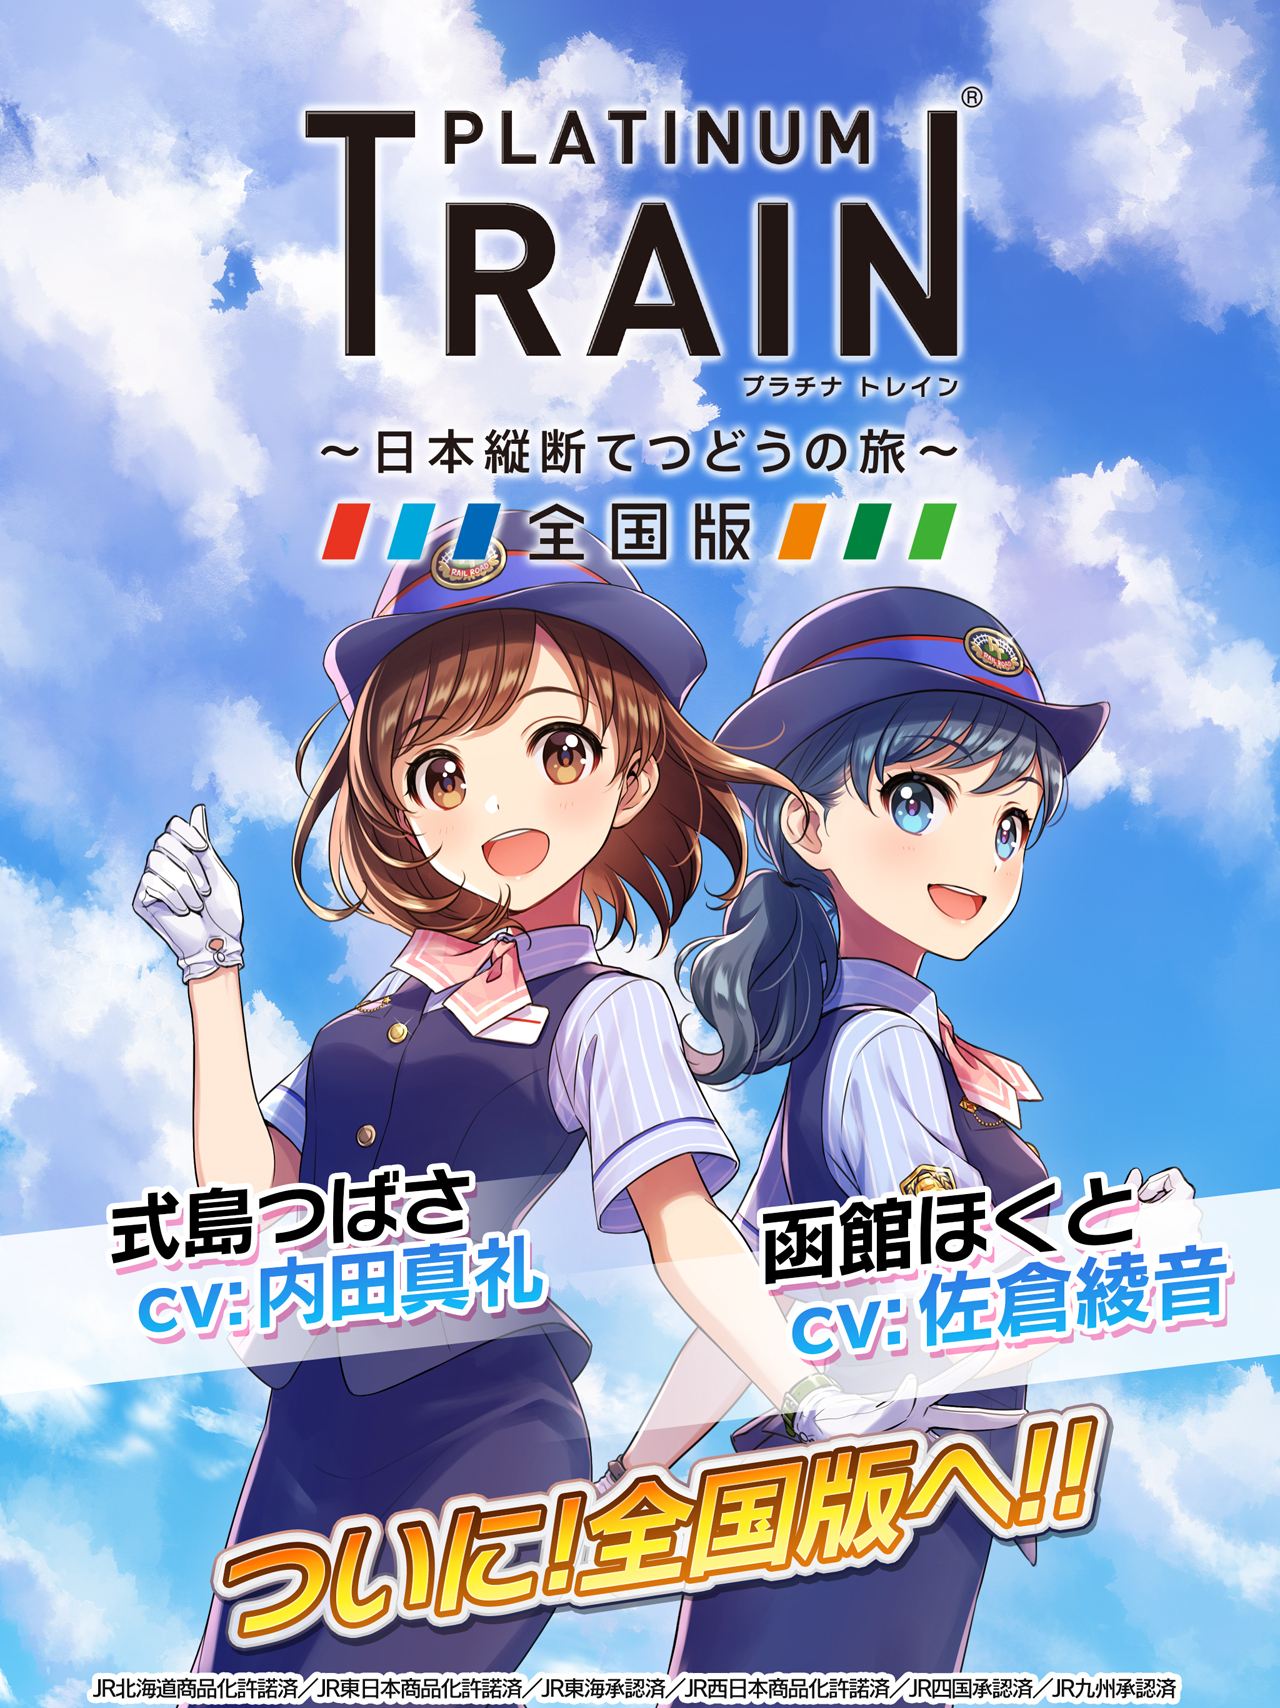 鉄道スゴロクゲーム プラチナ トレイン ついに全国版へ Jr東日本エリア Jr北海道エリアの路線 車両を一挙実装 株式会社ジェイコンテンツの プレスリリース